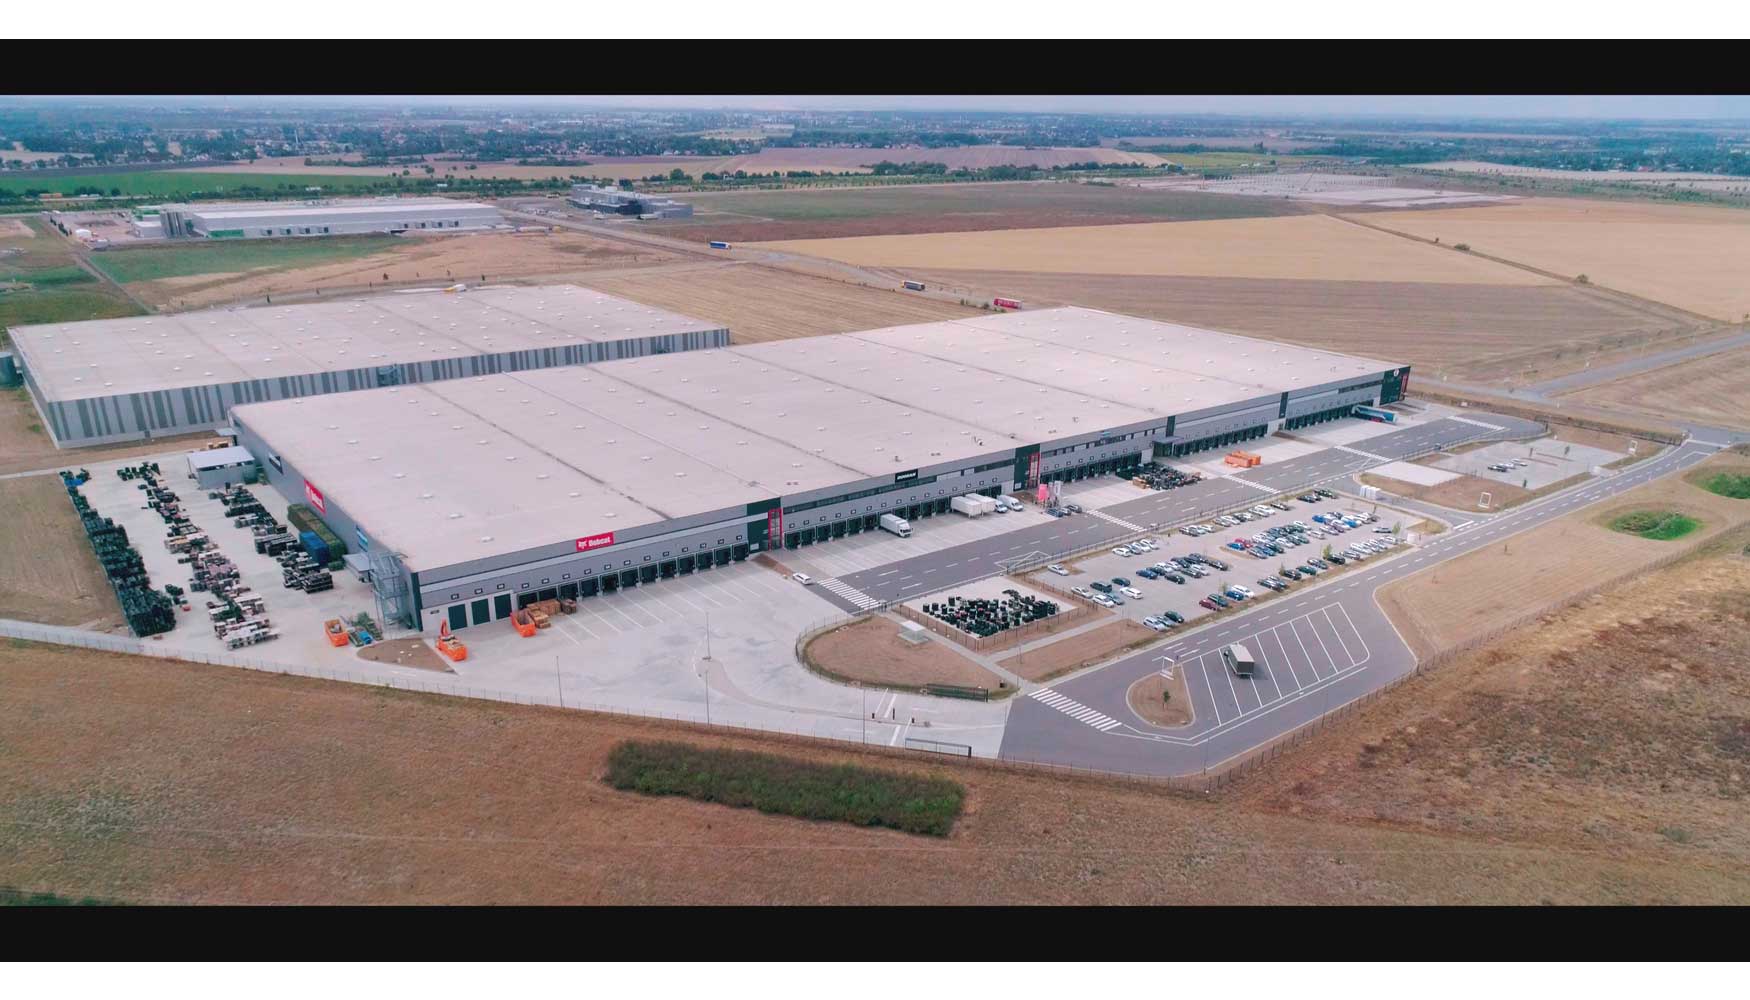 Situado cerca del aeropuerto de Leipzig, el nuevo centro de servicios posventa de Bobcat cuenta con 43.000 m2, rea equivalente a 14 campos de ftbol...